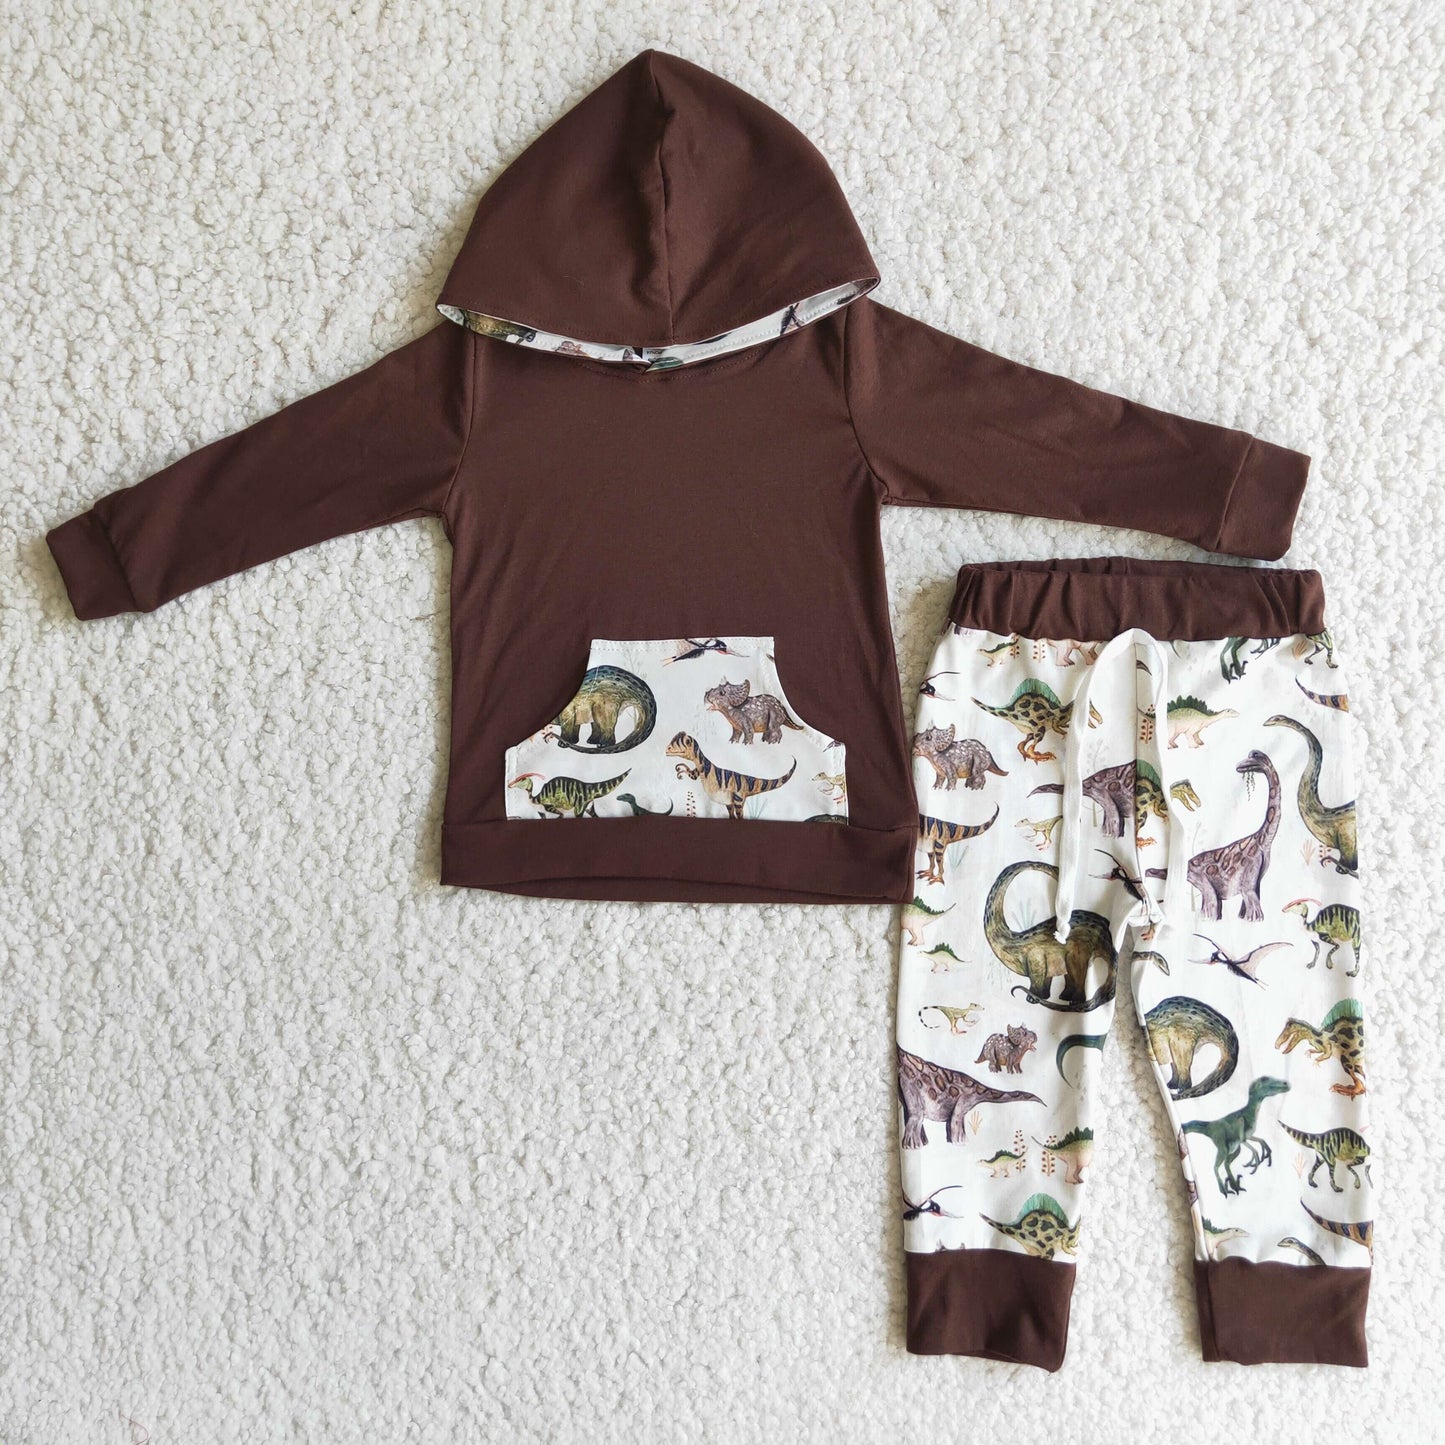 Brown Boy Dinosaur Hoodies Outfit